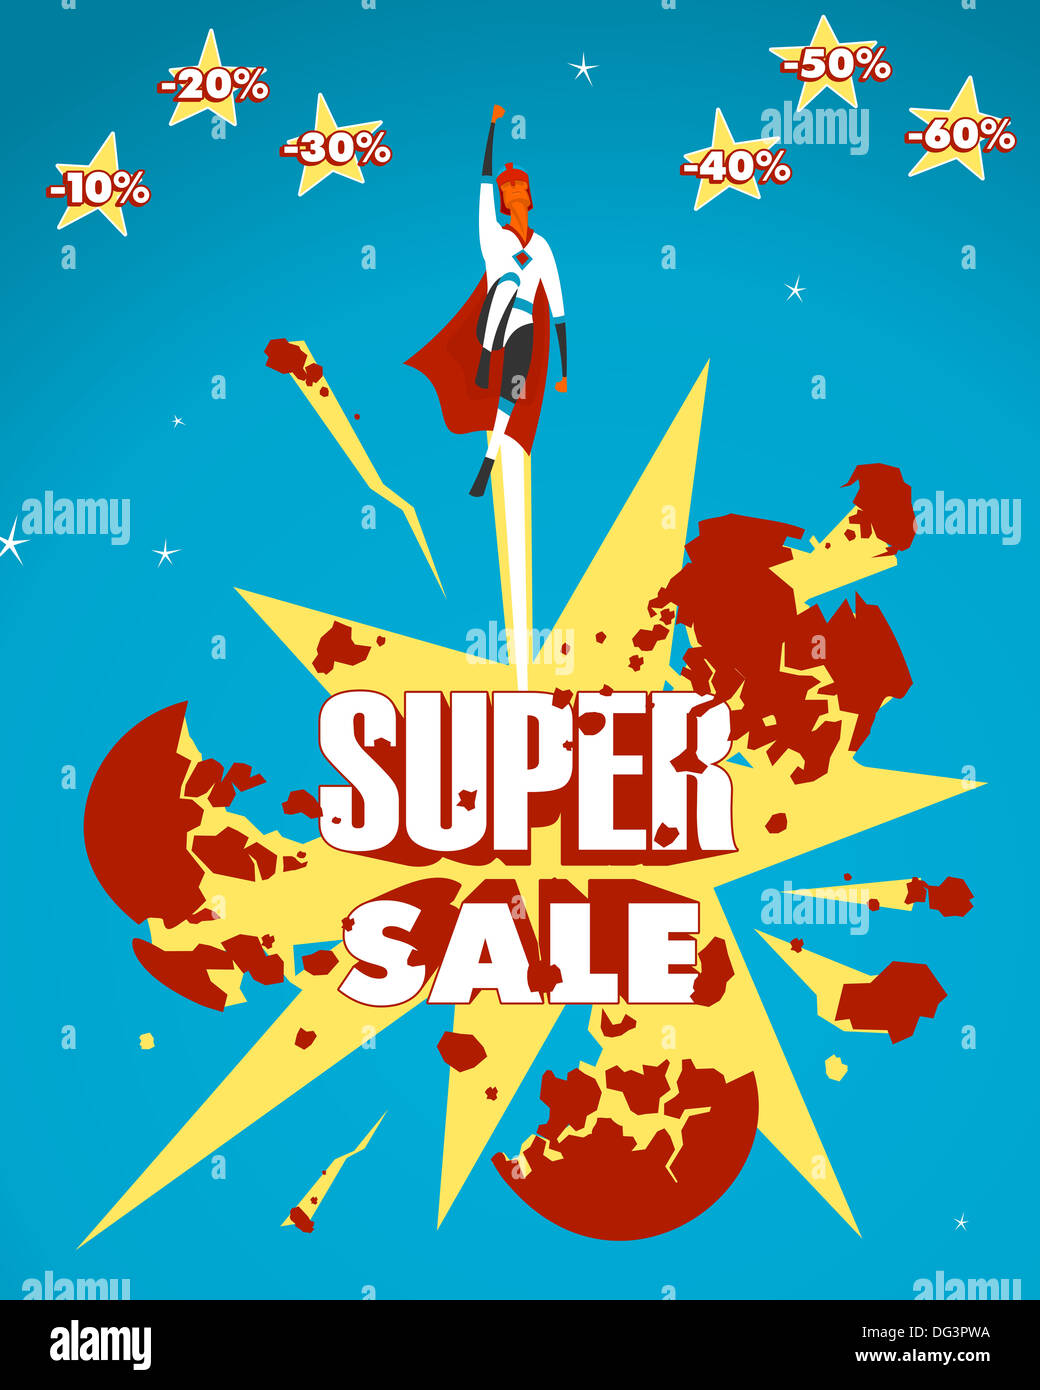 Super sale Stock Photo